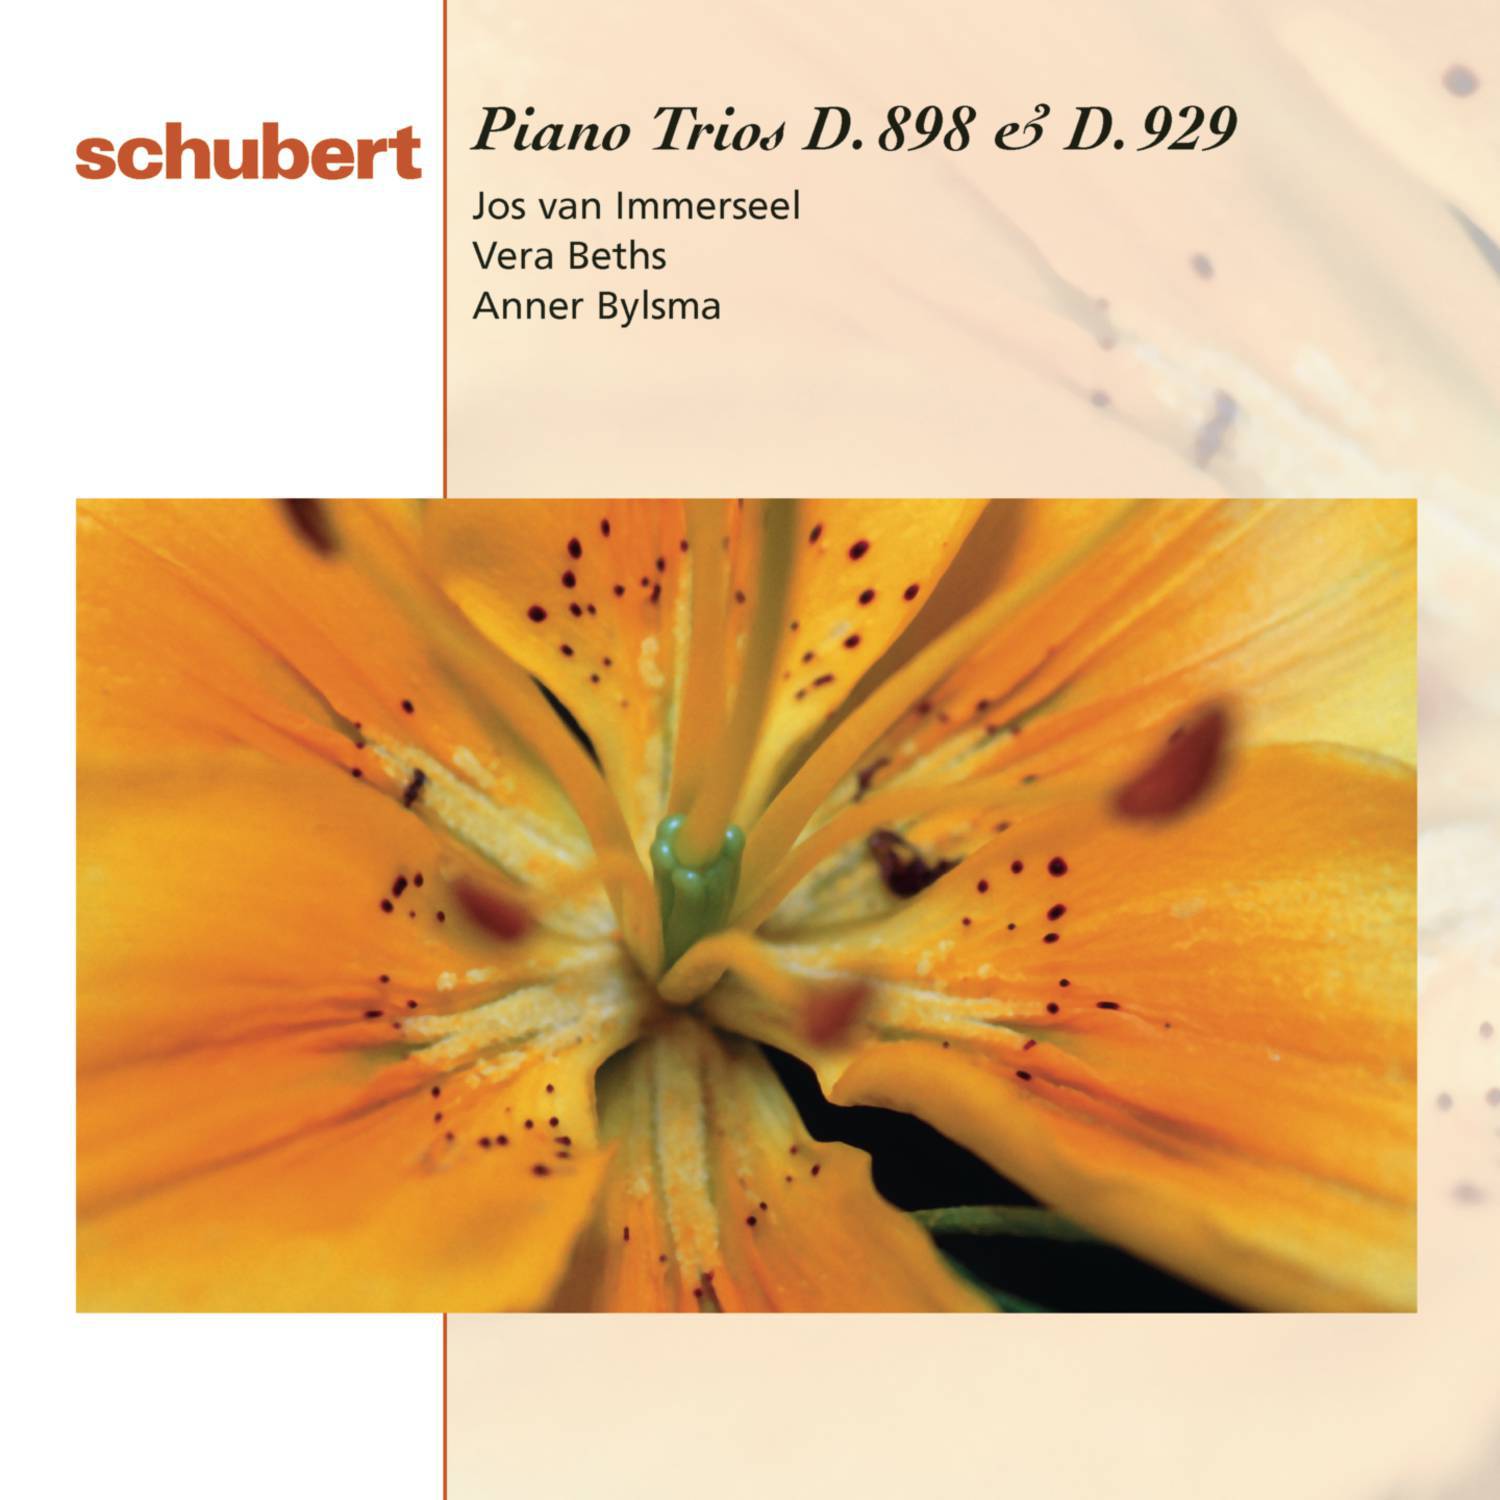 Piano Trio No. 1 in B-Flat Major, D. 898, Op. 99: IV. Rondo. Allegro vivace - Presto